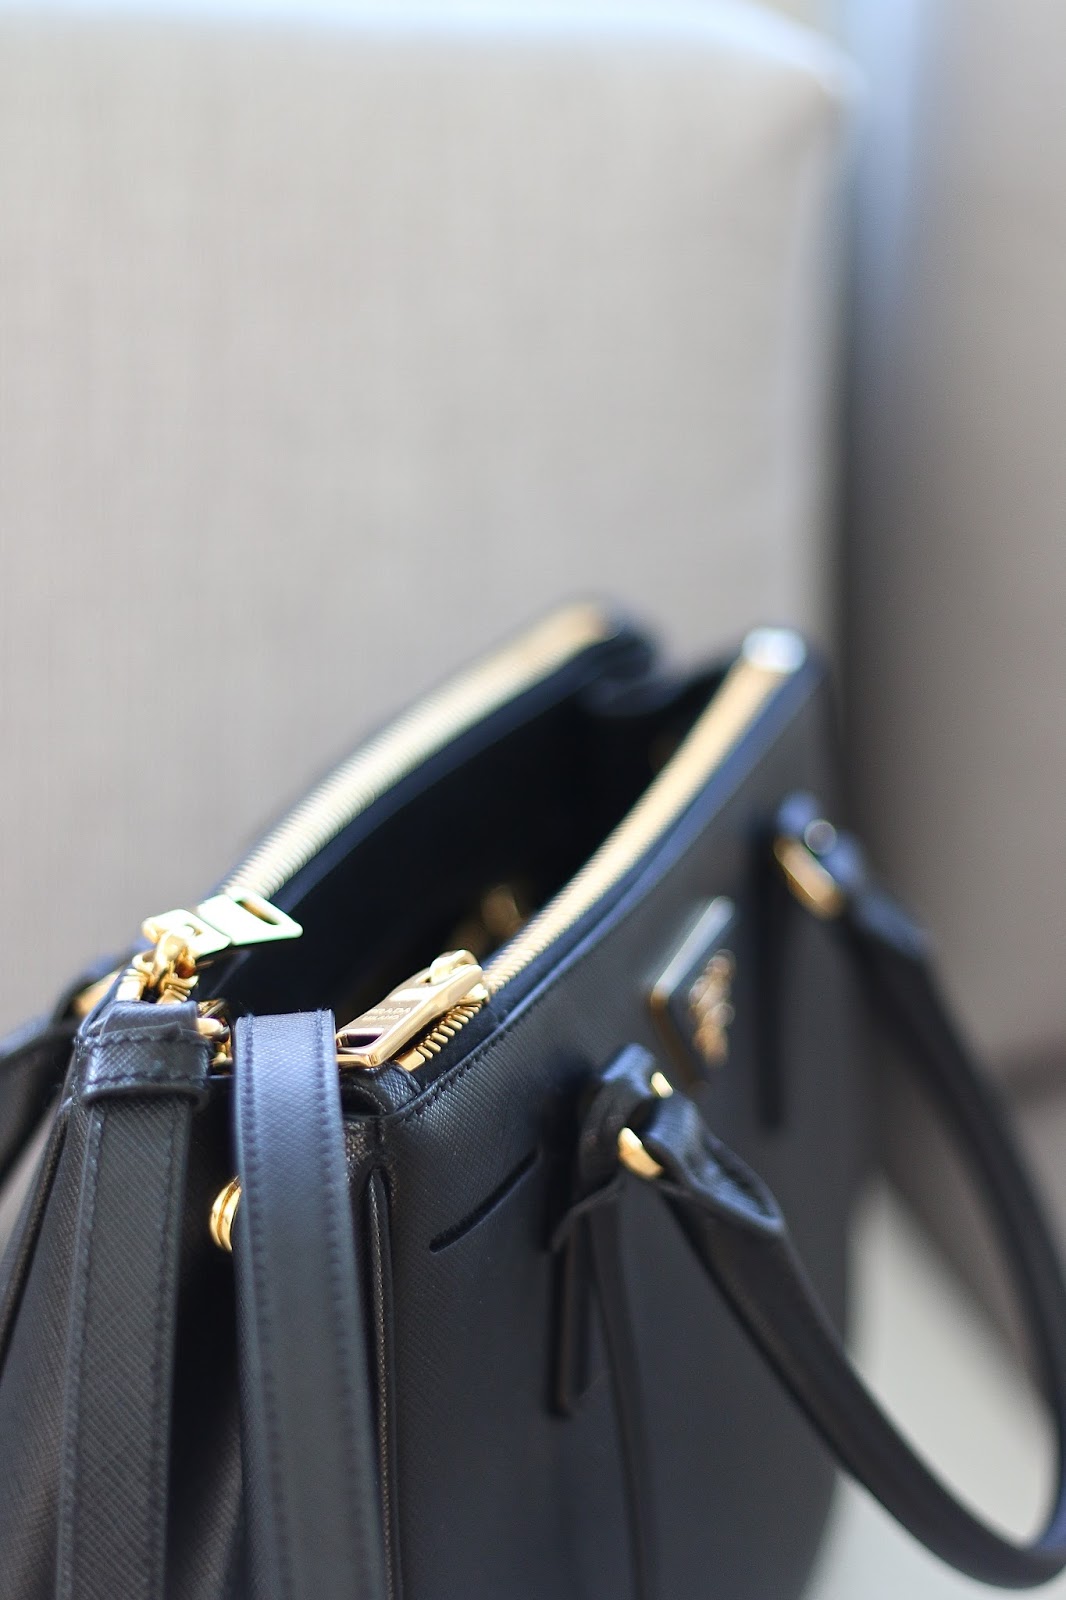 Prada Galleria Handbag Review - Pretty Little Details